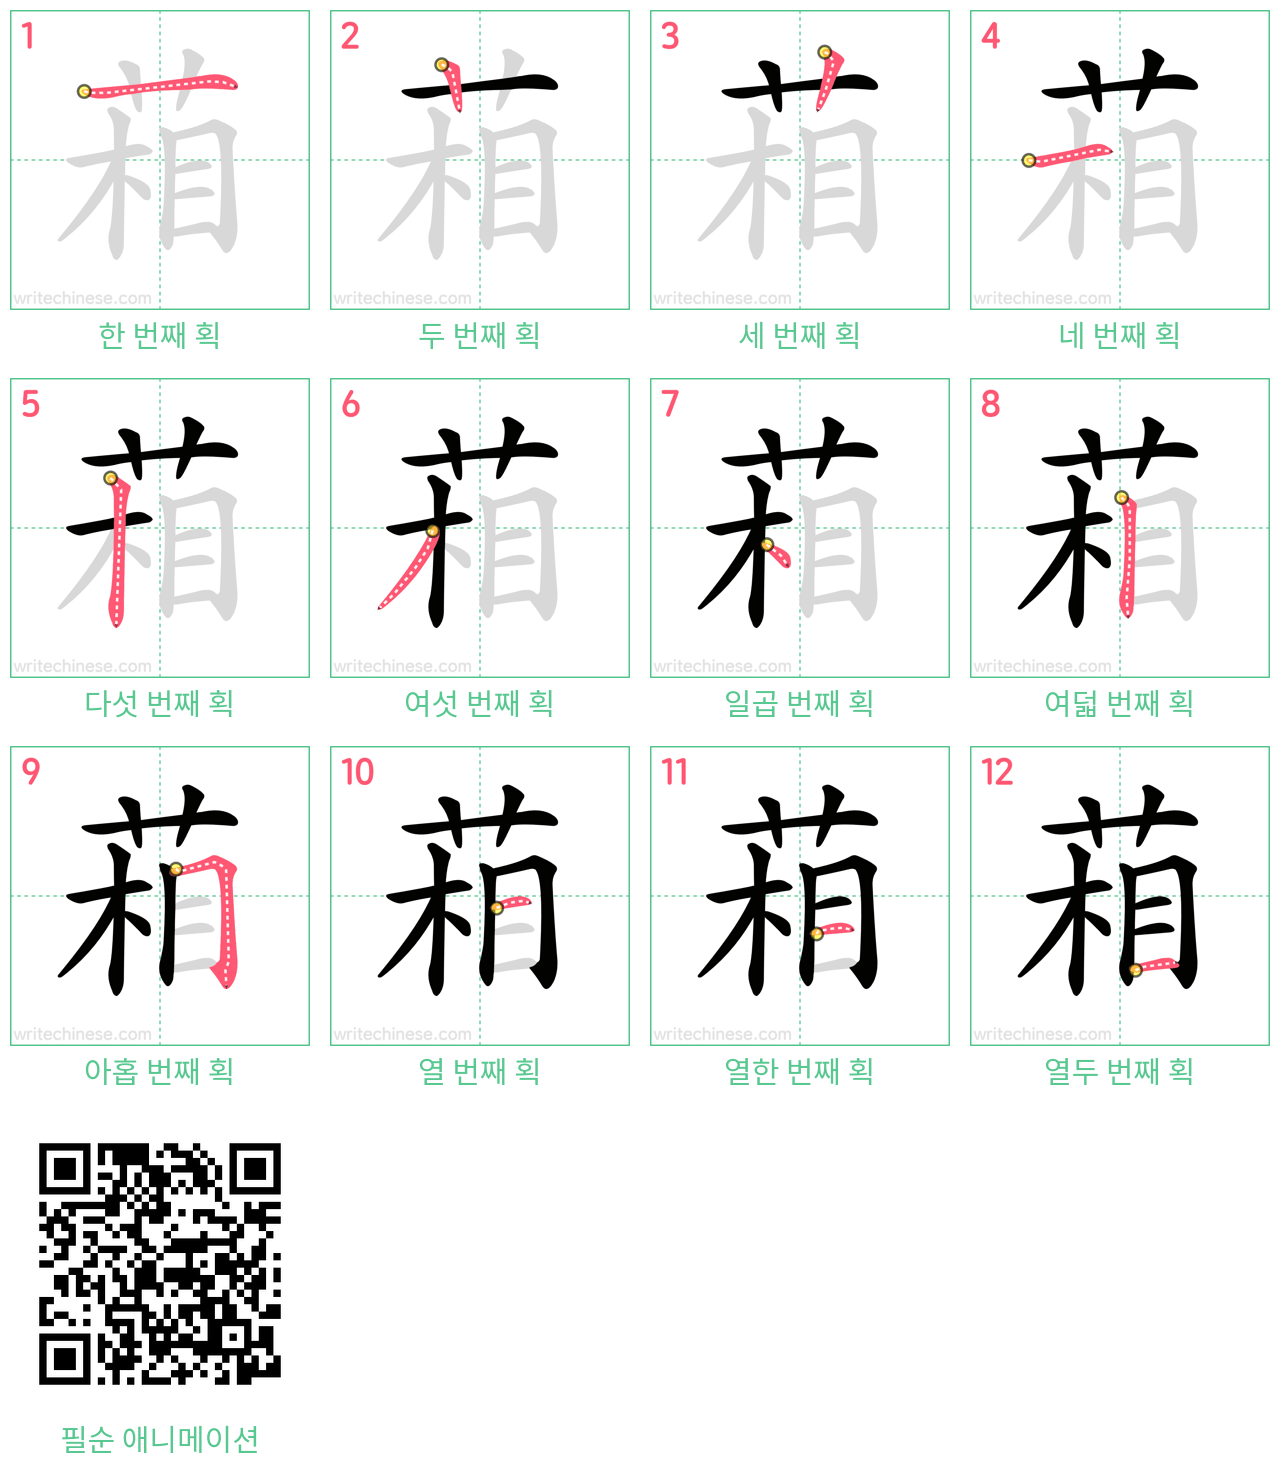 葙 step-by-step stroke order diagrams